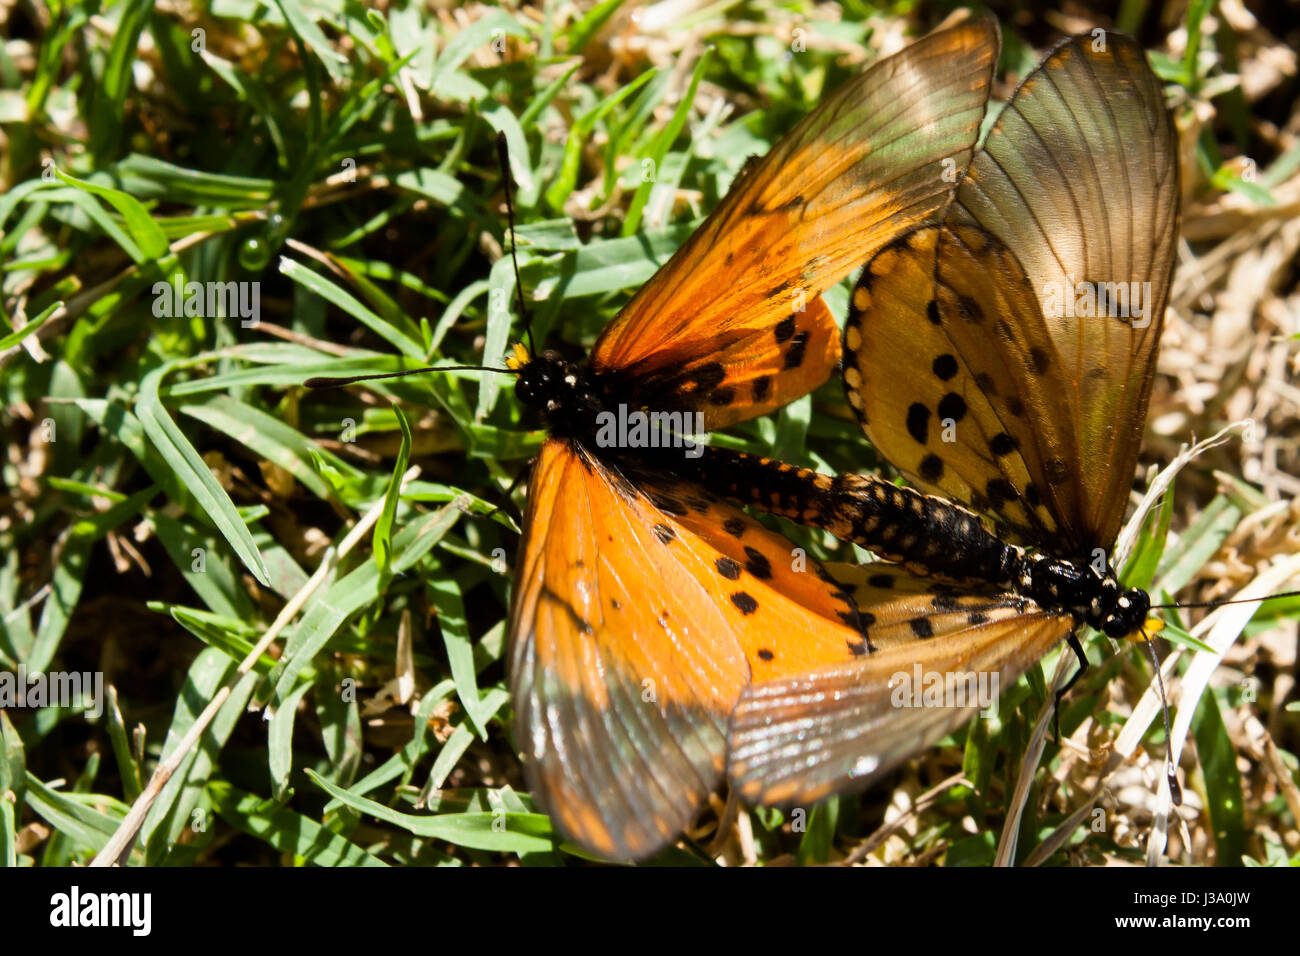 A passeggiare nel giardino e ho visto questo due butterfly coniugata ora ho dovuto prendere una foto prima di volare lontano Foto Stock